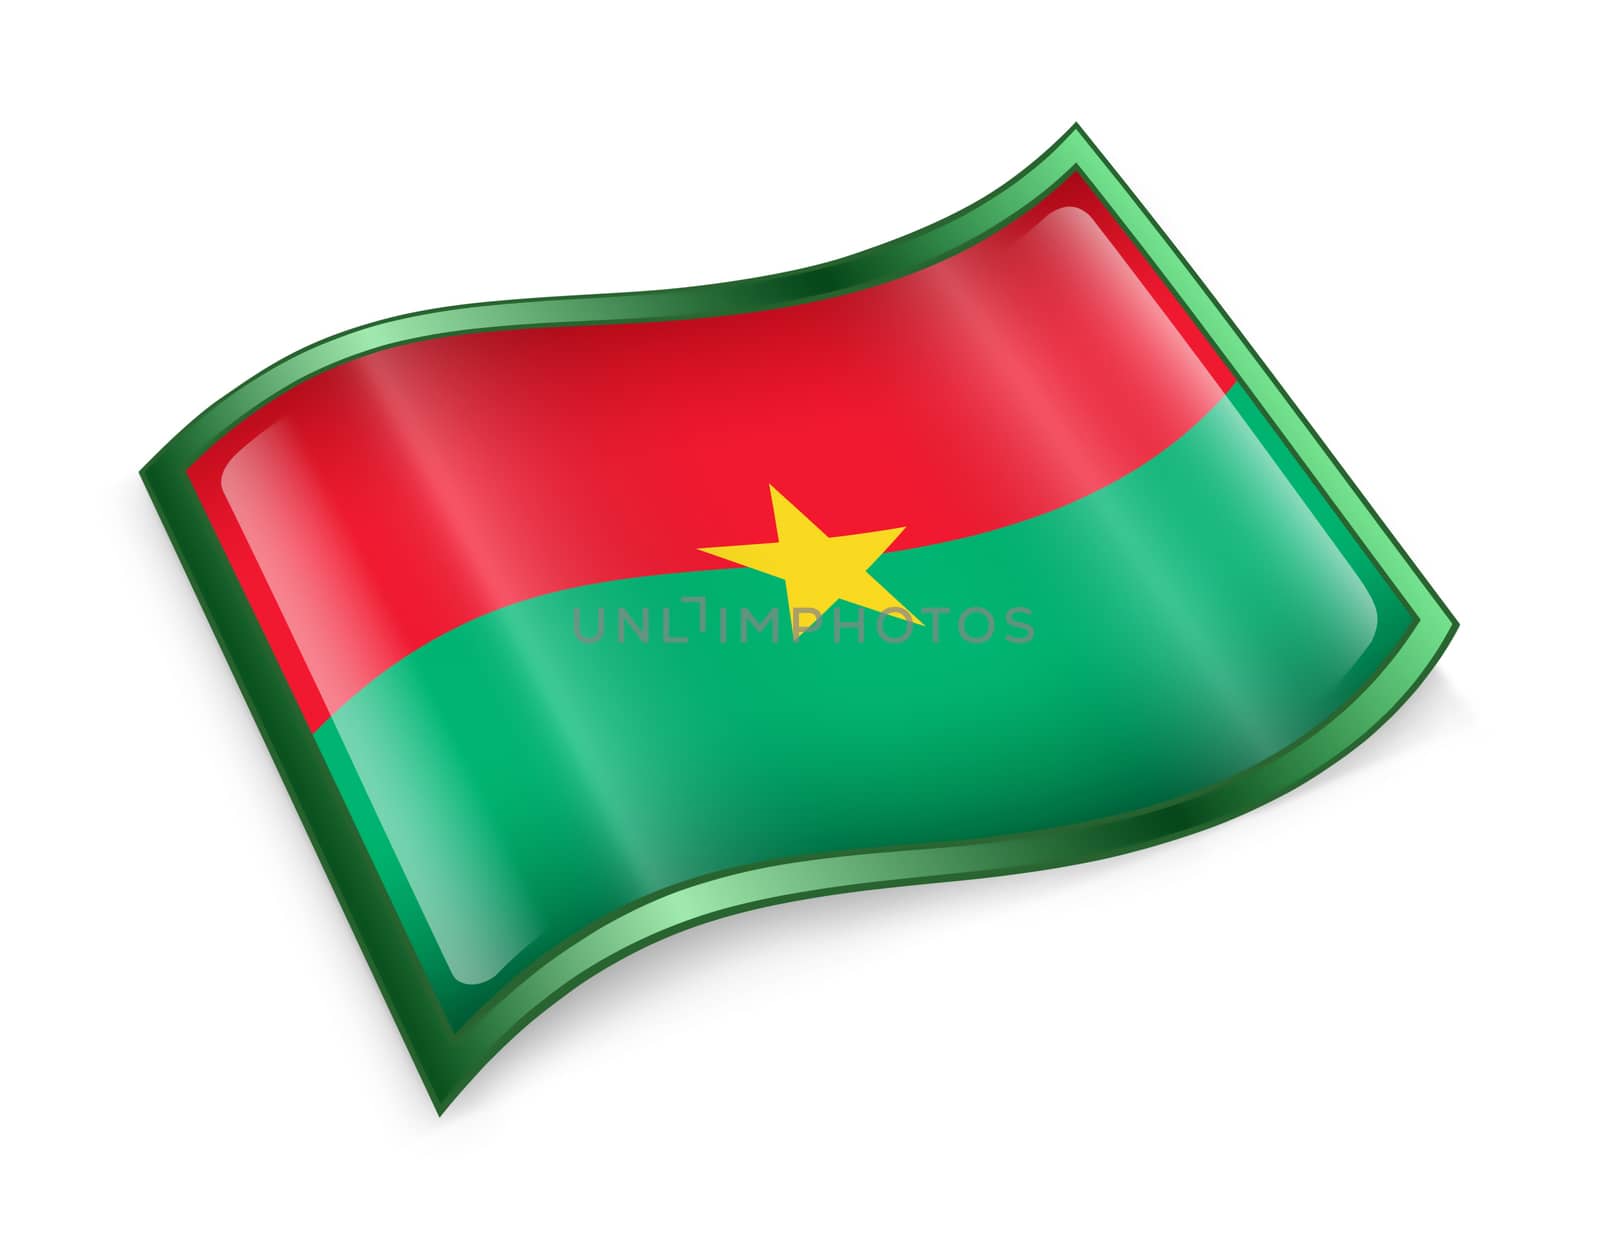 Burkina Faso flag icon, isolated on white background